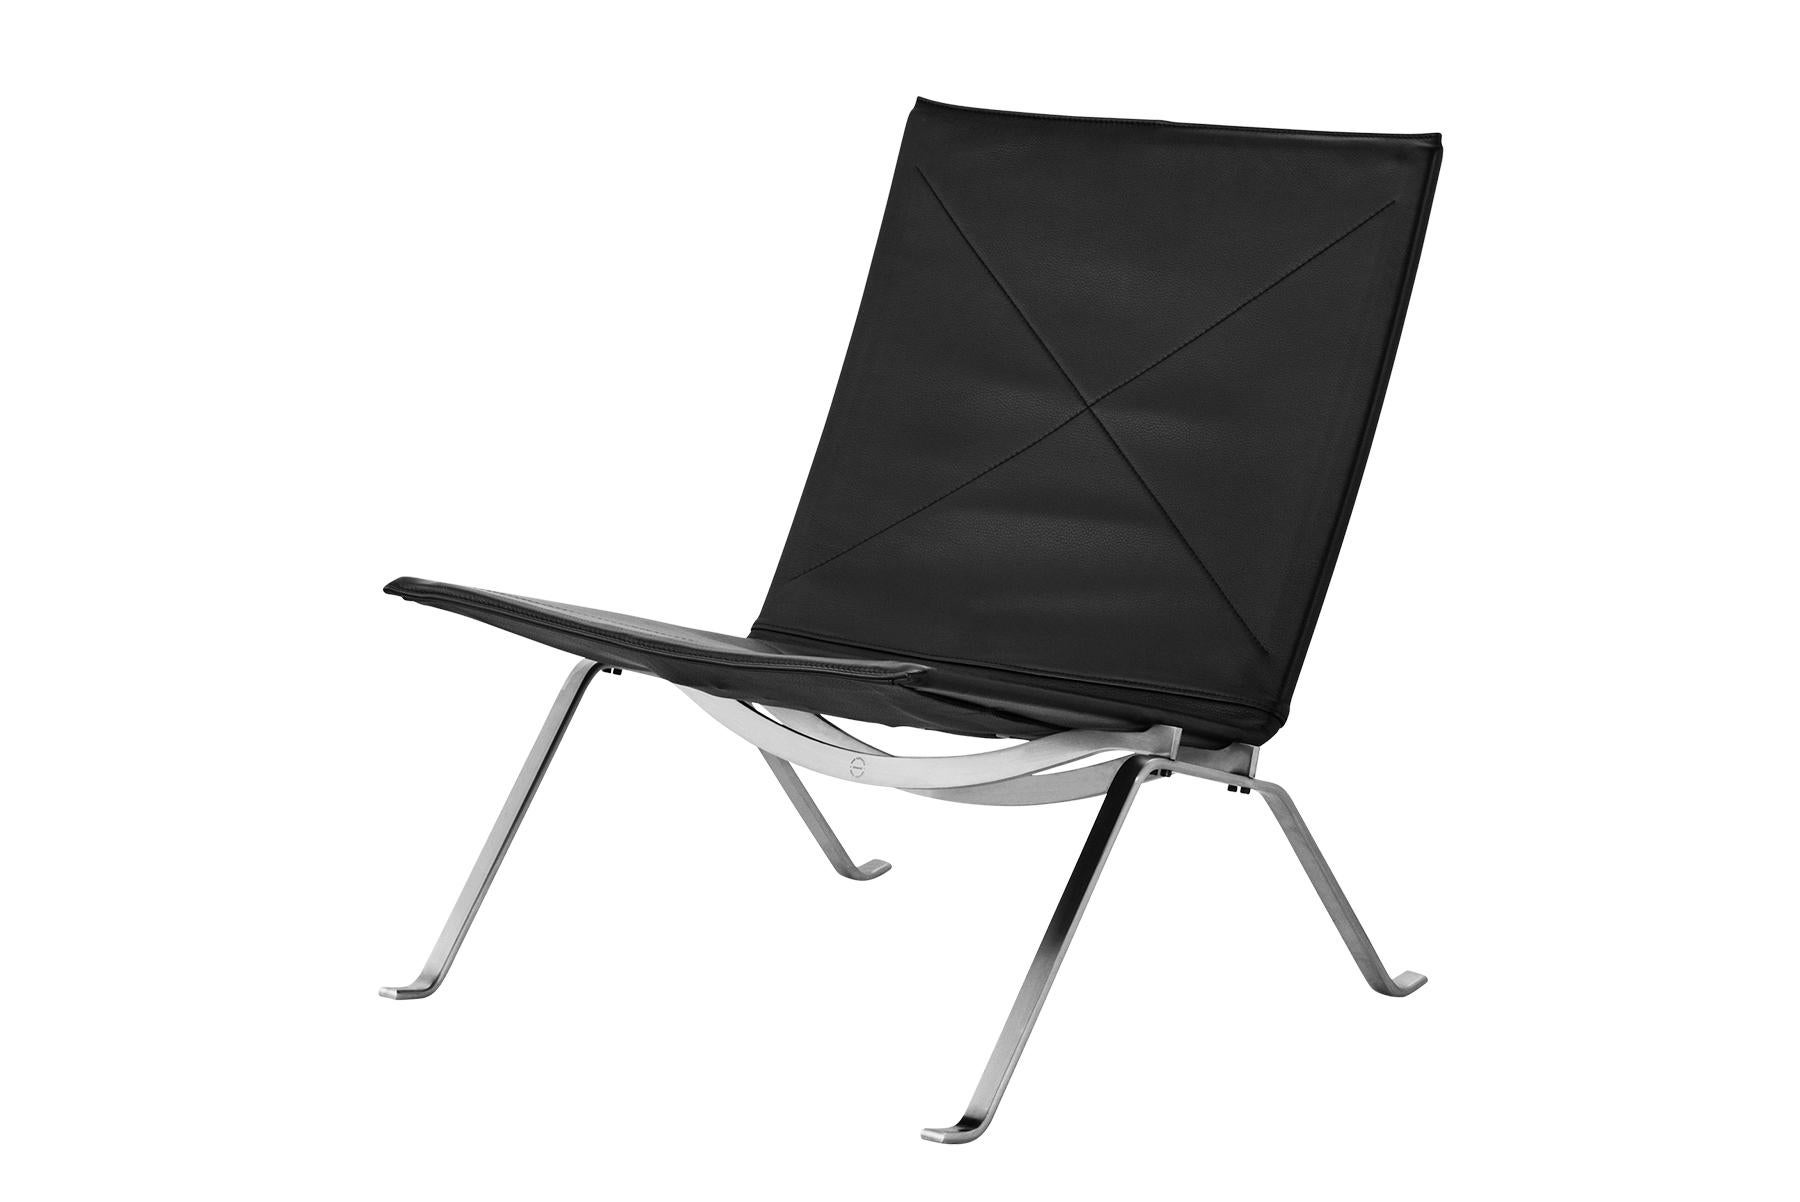 La chaise longue PK22, discrète et élégante, incarne le travail de Poul Kjærholm et sa recherche de la forme idéale et de la dimension industrielle, toujours présente dans son travail. Le profil de la structure en acier provient de son projet de fin